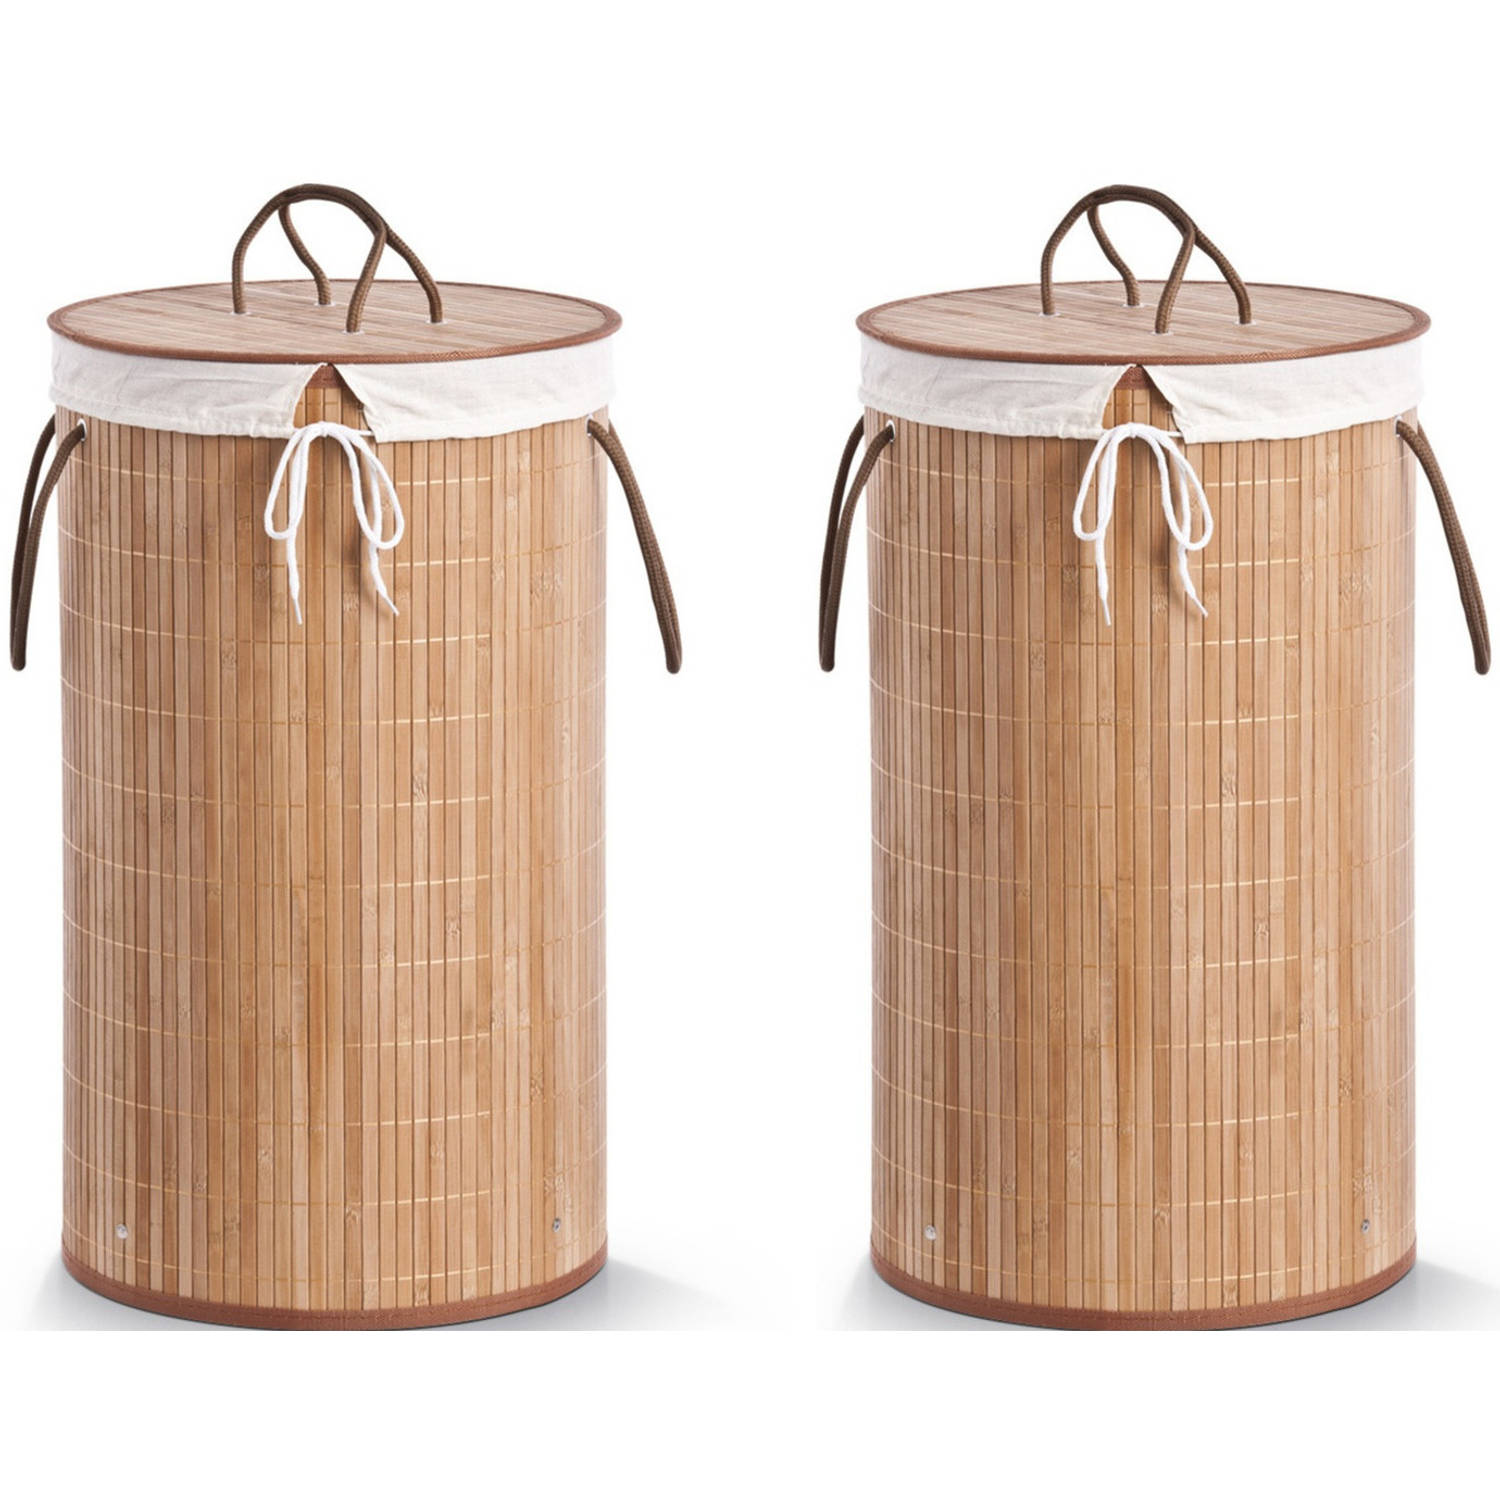 2x Luxe ronde bruine wasmanden van bamboe hout 35 x 60 cm - Wasmanden